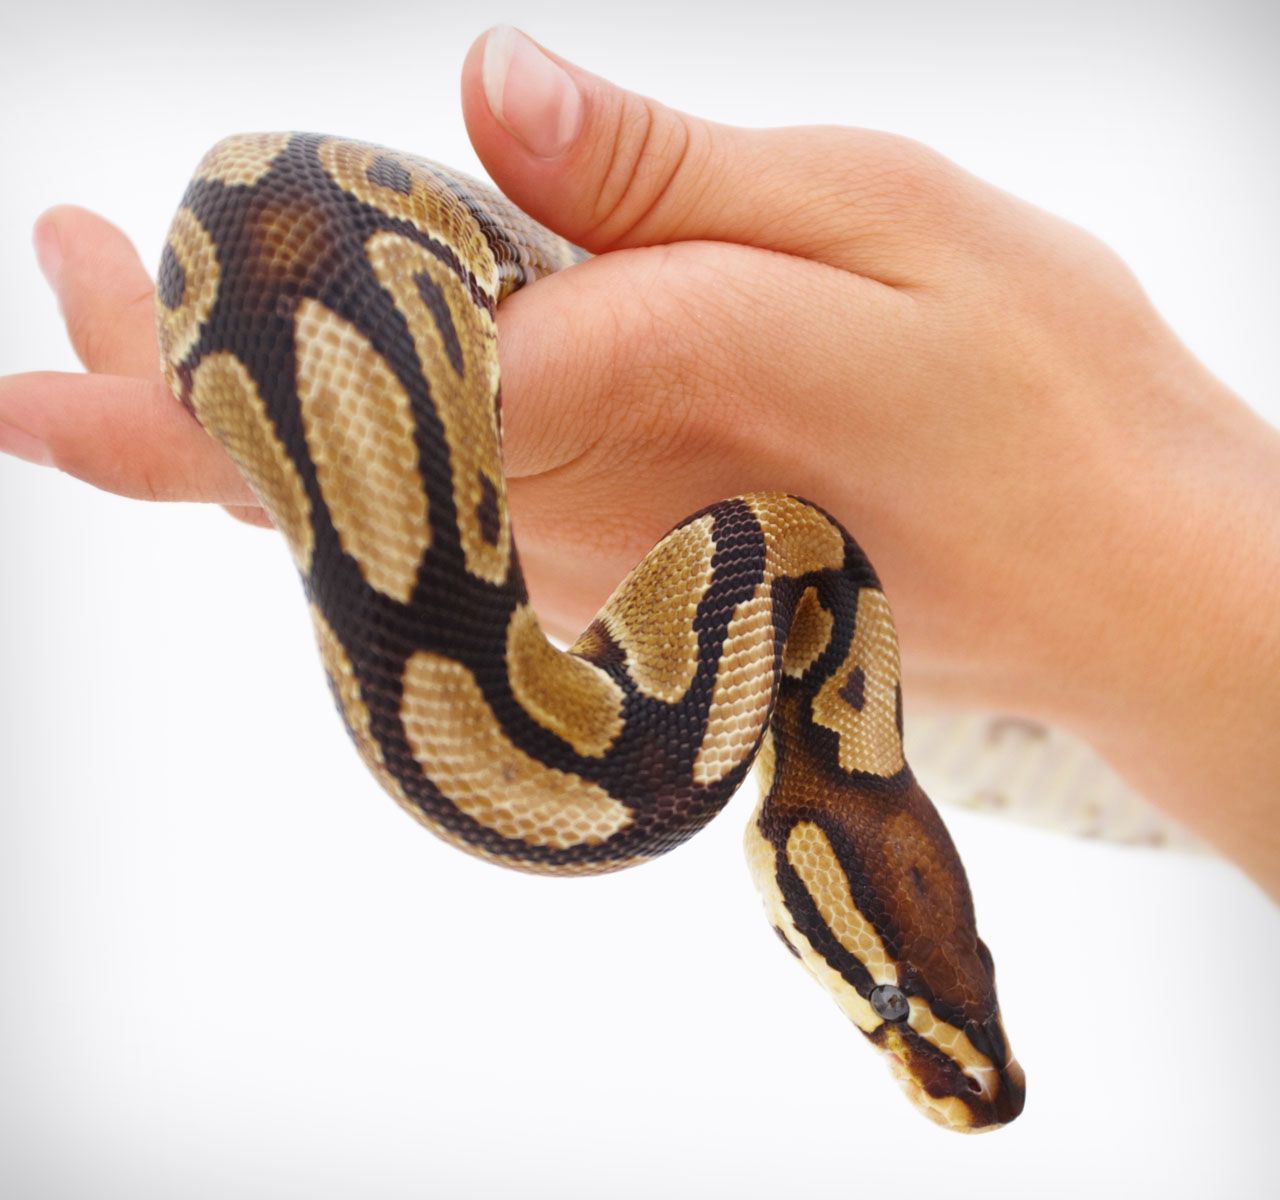 The Best Pet Snakes: Choosing a New Pet 